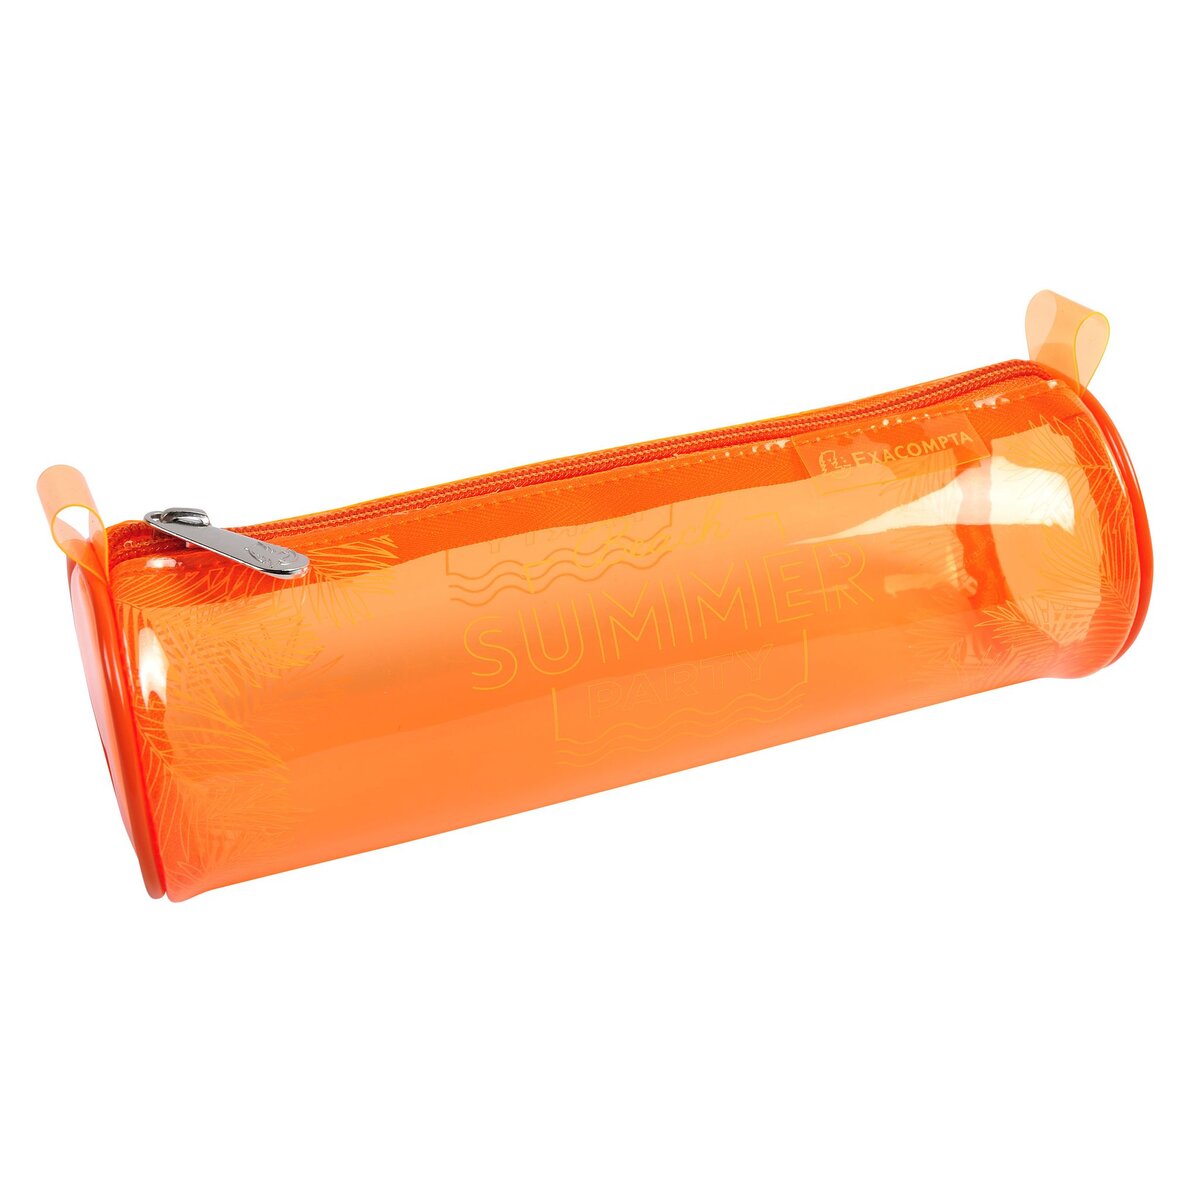 EXACOMPTA Trousse ronde 1 compartiment orange Fluo